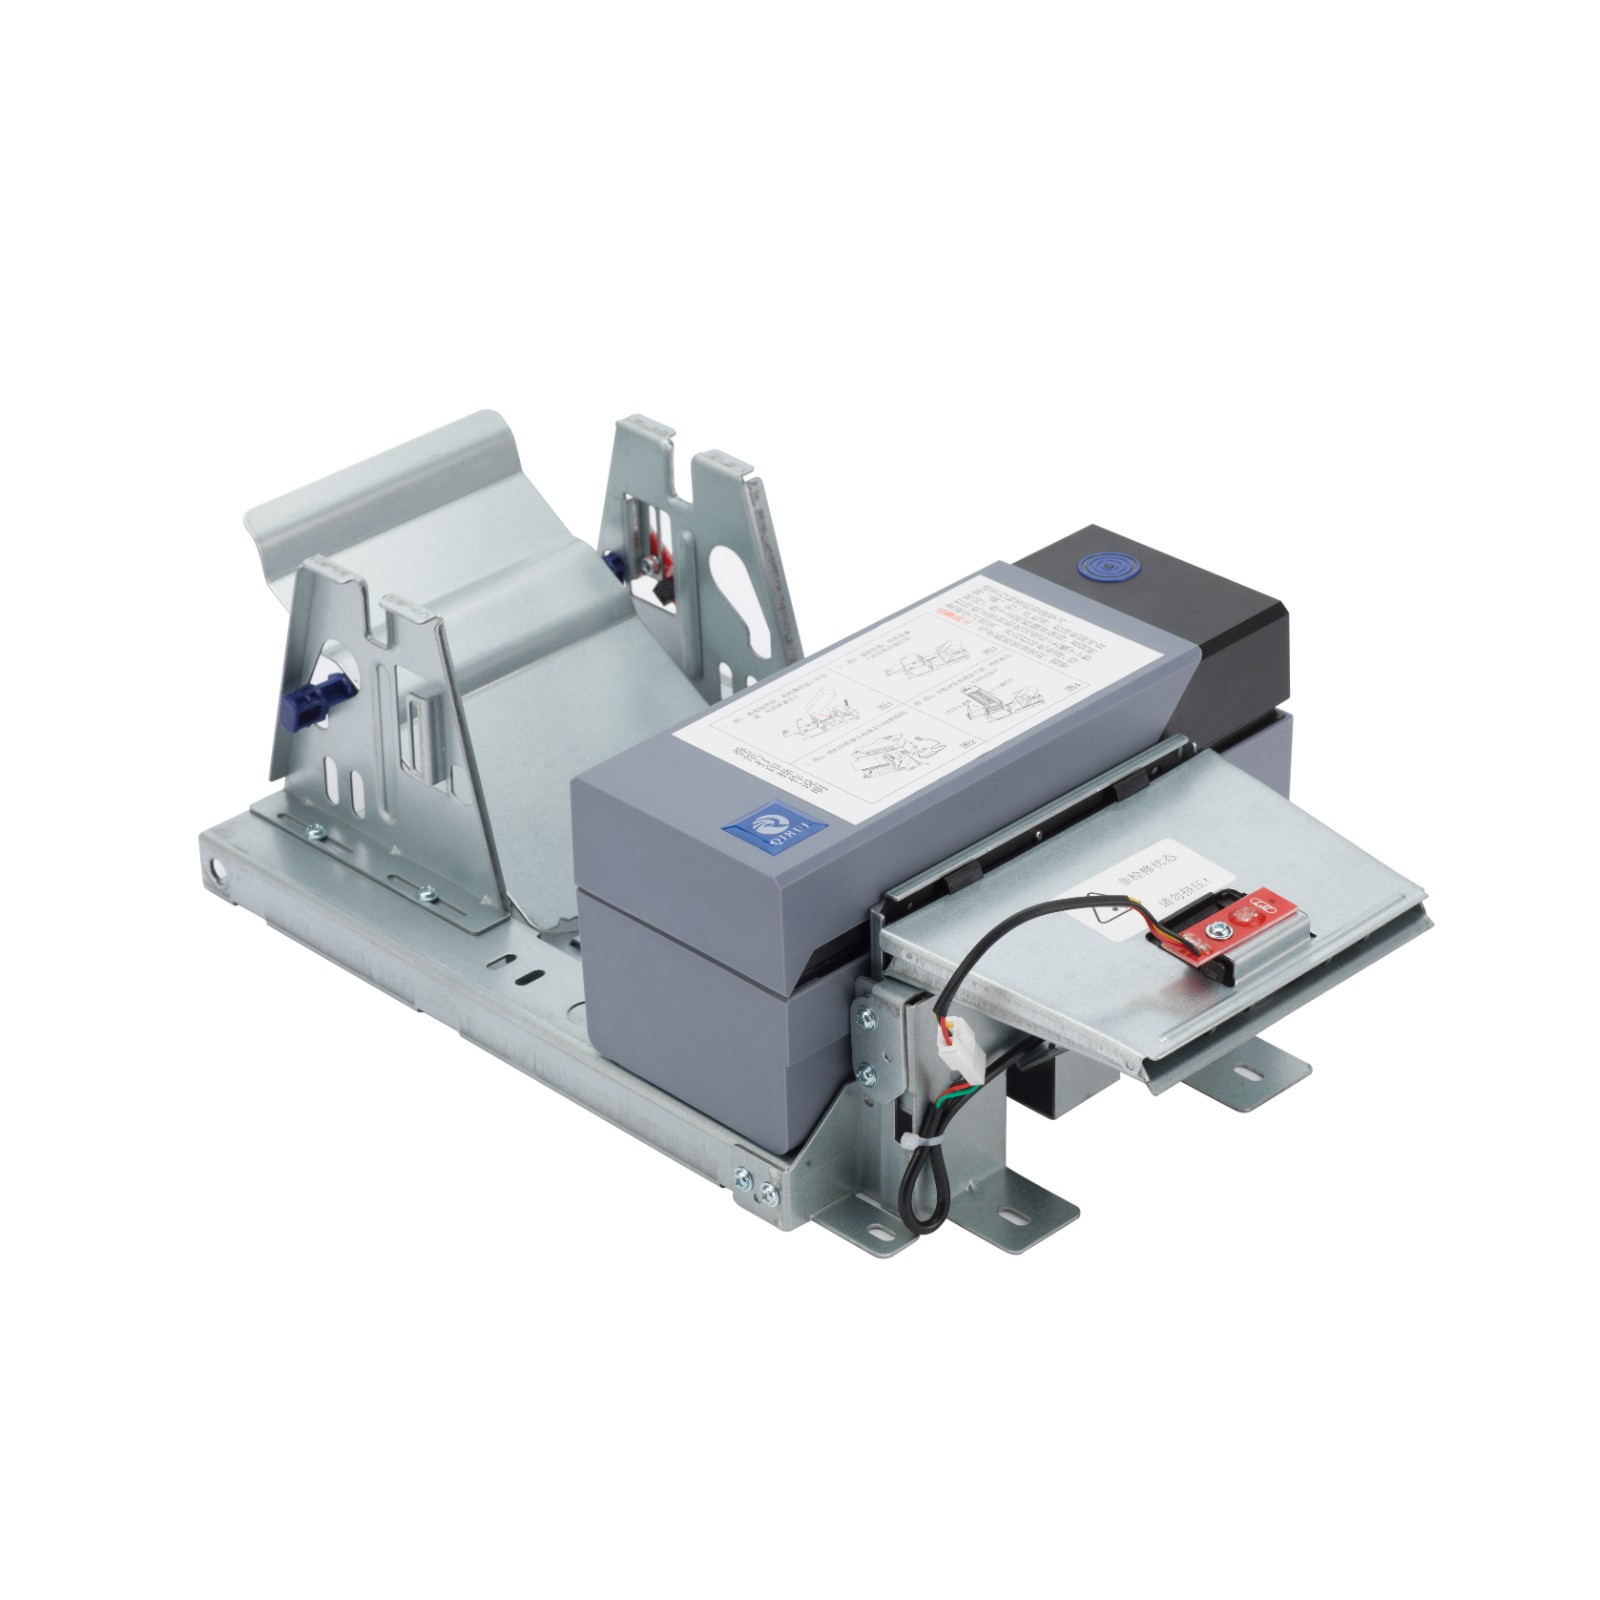 4 inch ingebouwde kiosklabelprinter met automatisch snijmechanisme